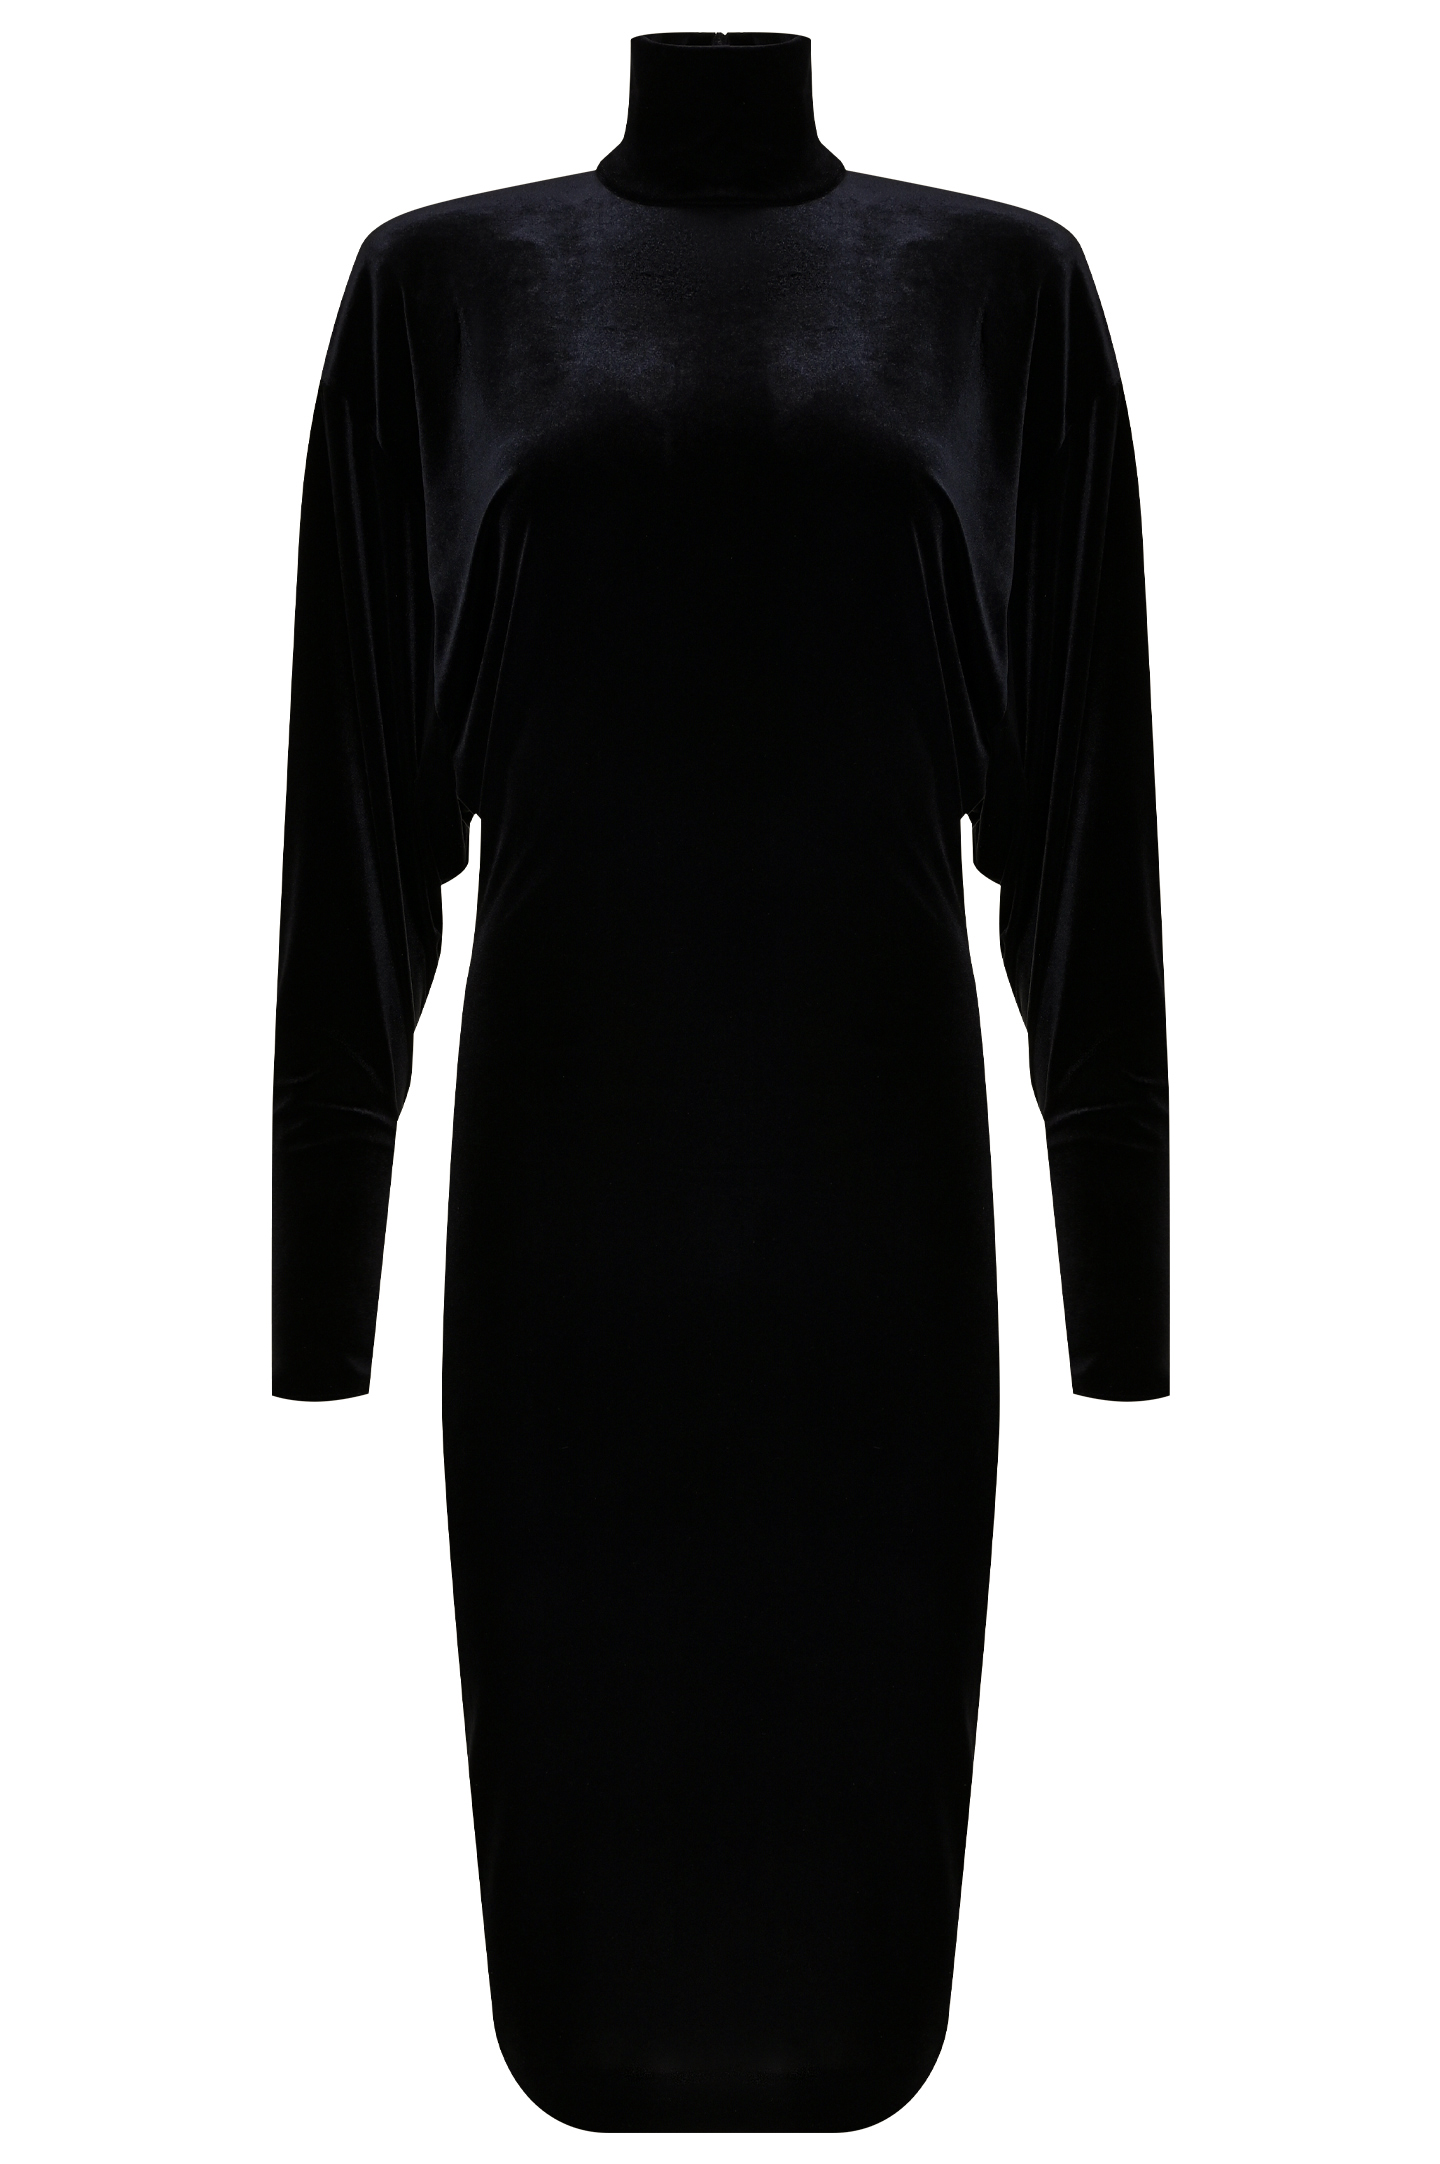 Платье ALEXANDRE VAUTHIER 223DR1509 0193-1144, цвет: Черный, Женский